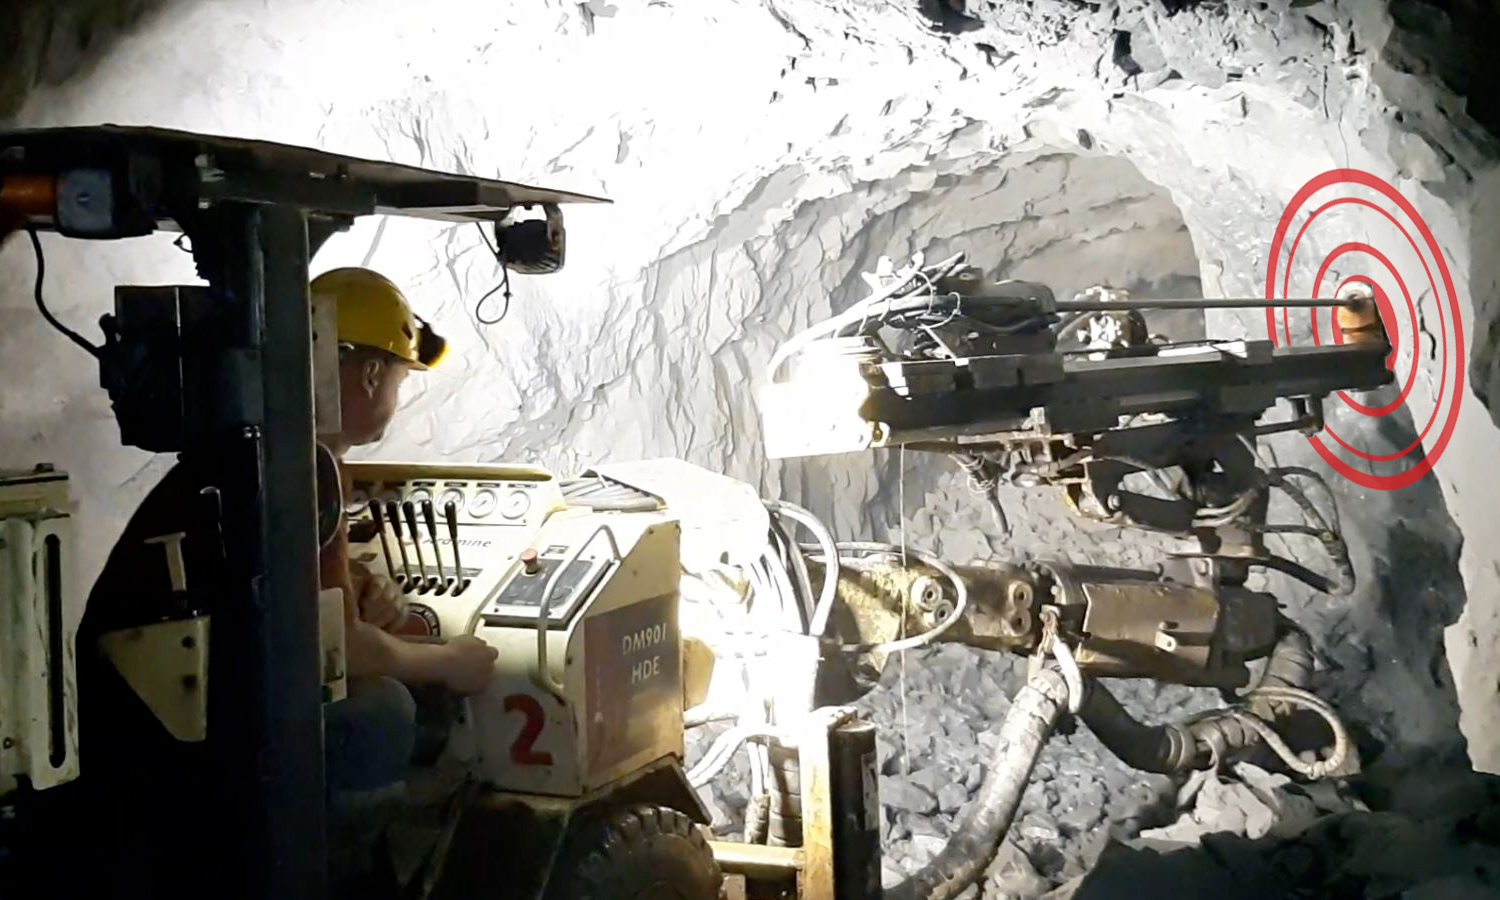 Aramine driller DM901HDE in an underground mine